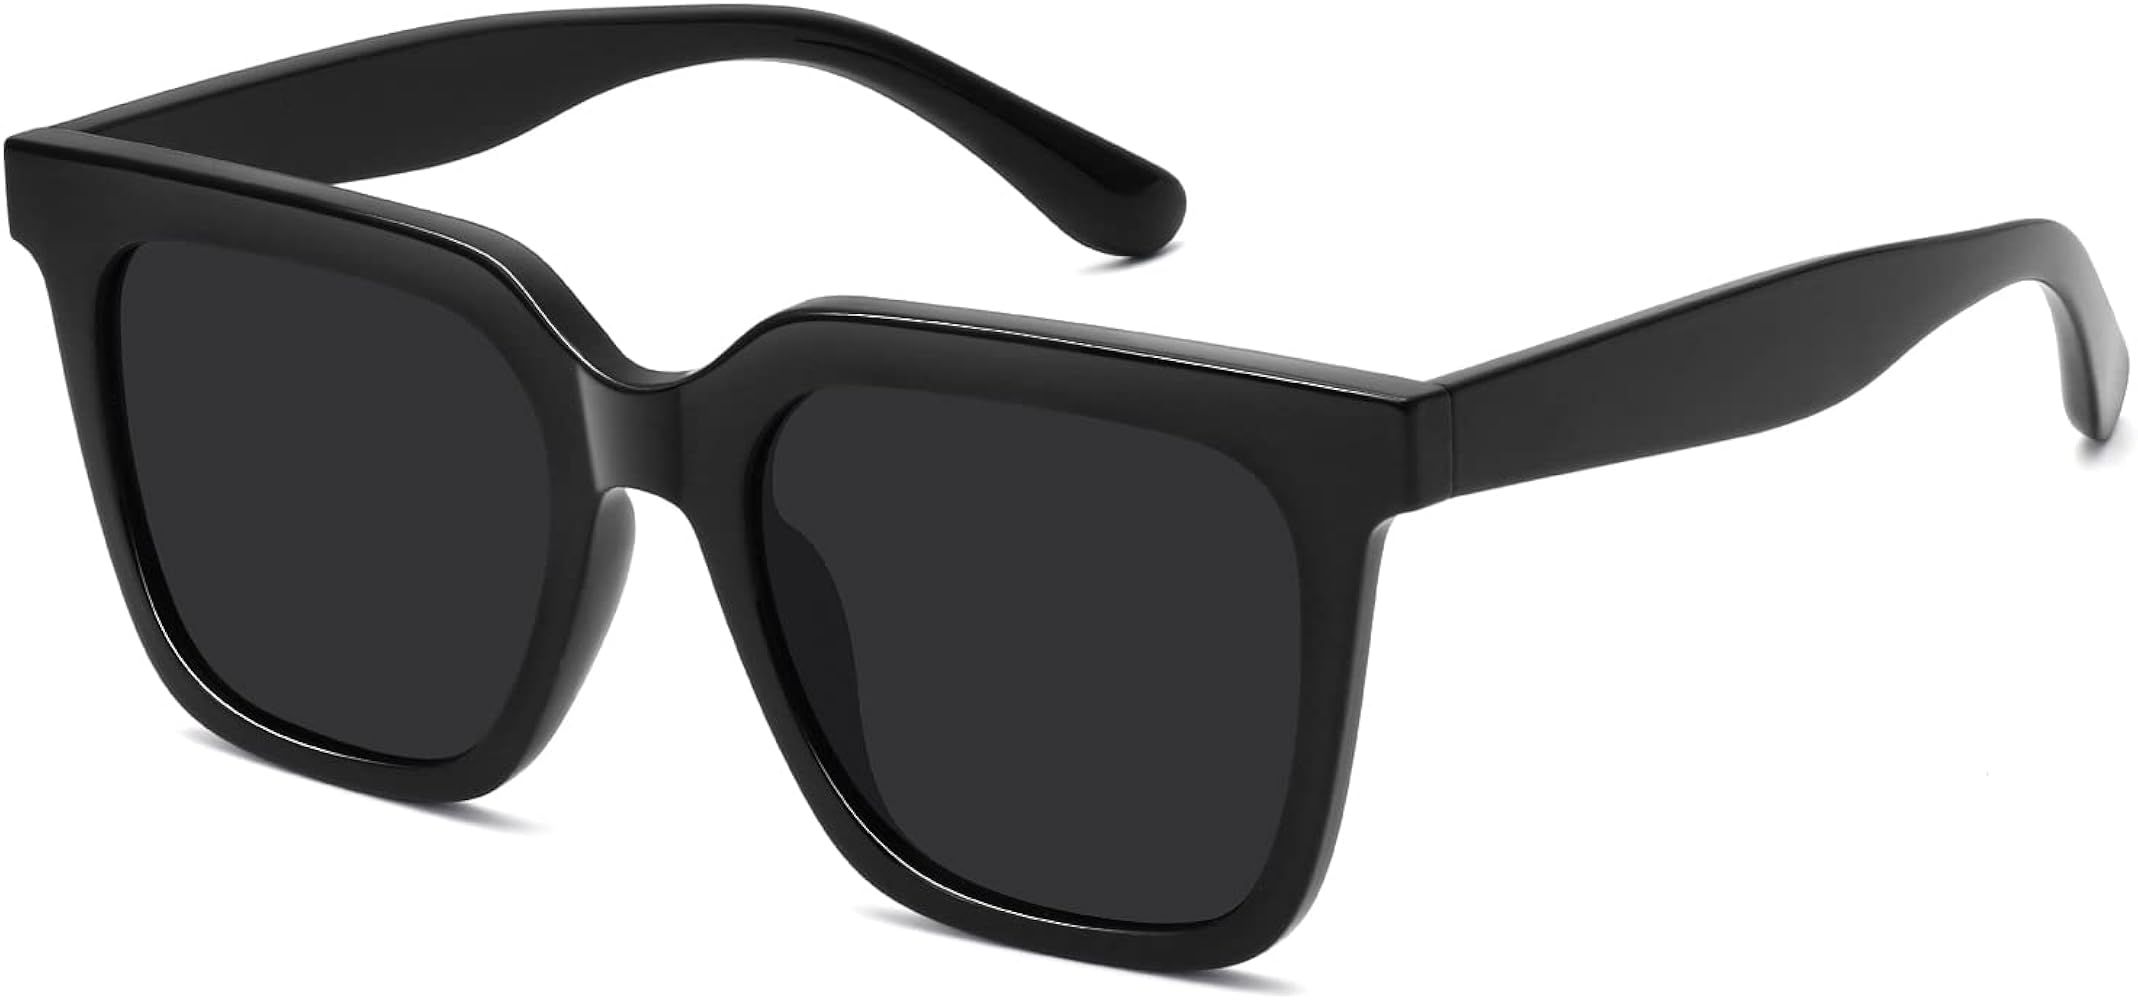 Women Square Sunglasses Black Sunglasses for Women Retro Sun Glasses UV400 Protection | Amazon (US)